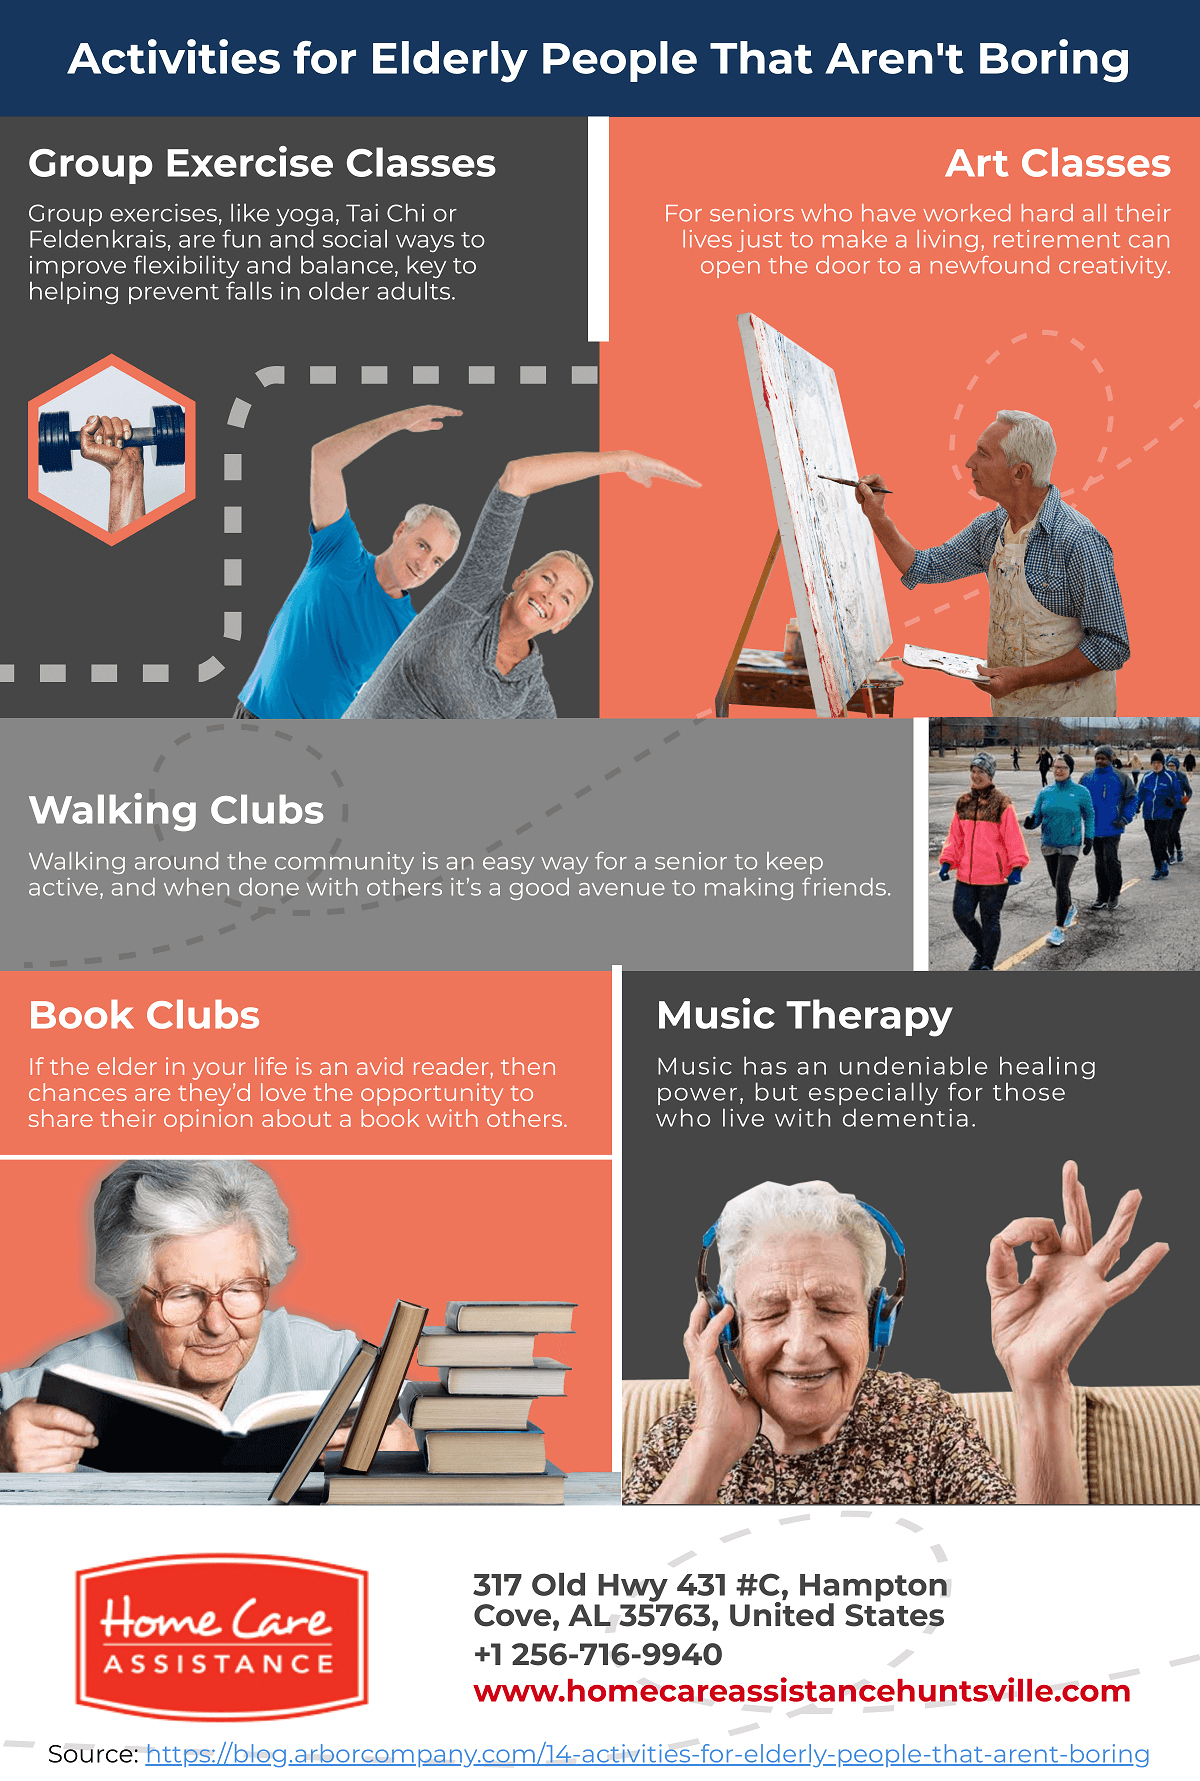 Activities for Elderly People that Aren’t Boring [Infographic]